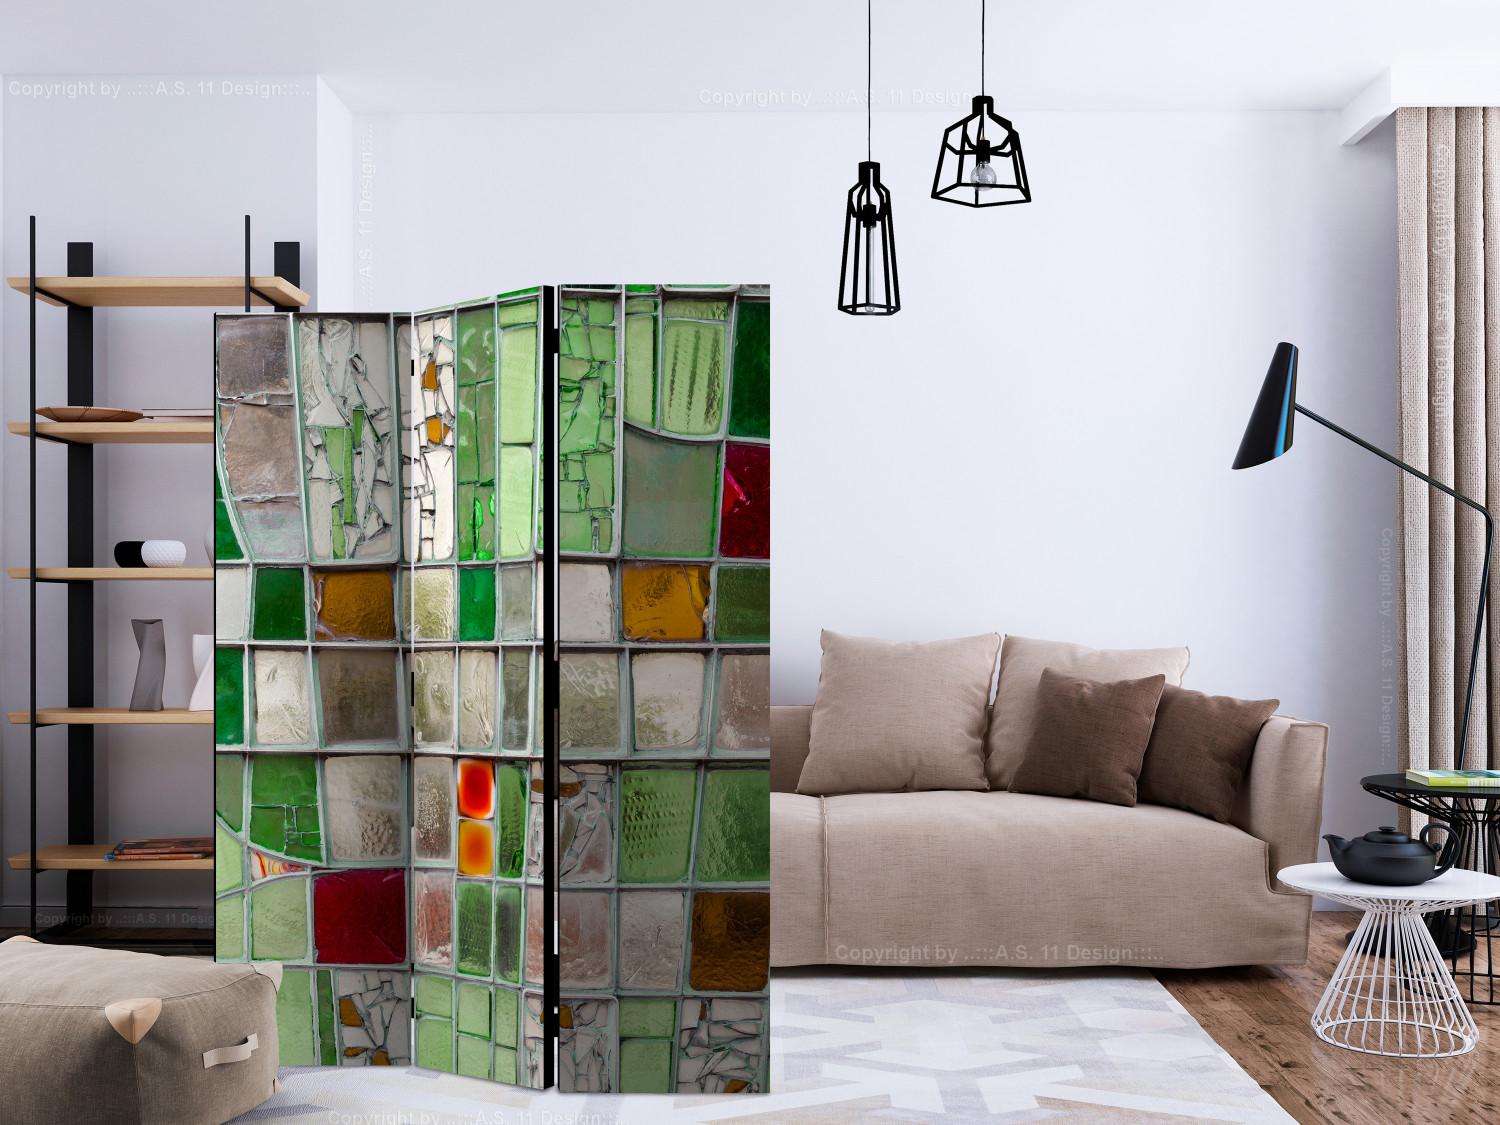 Biombo decorativo Vidriera esmeralda (3 partes) - Mosaico de colores vívidos